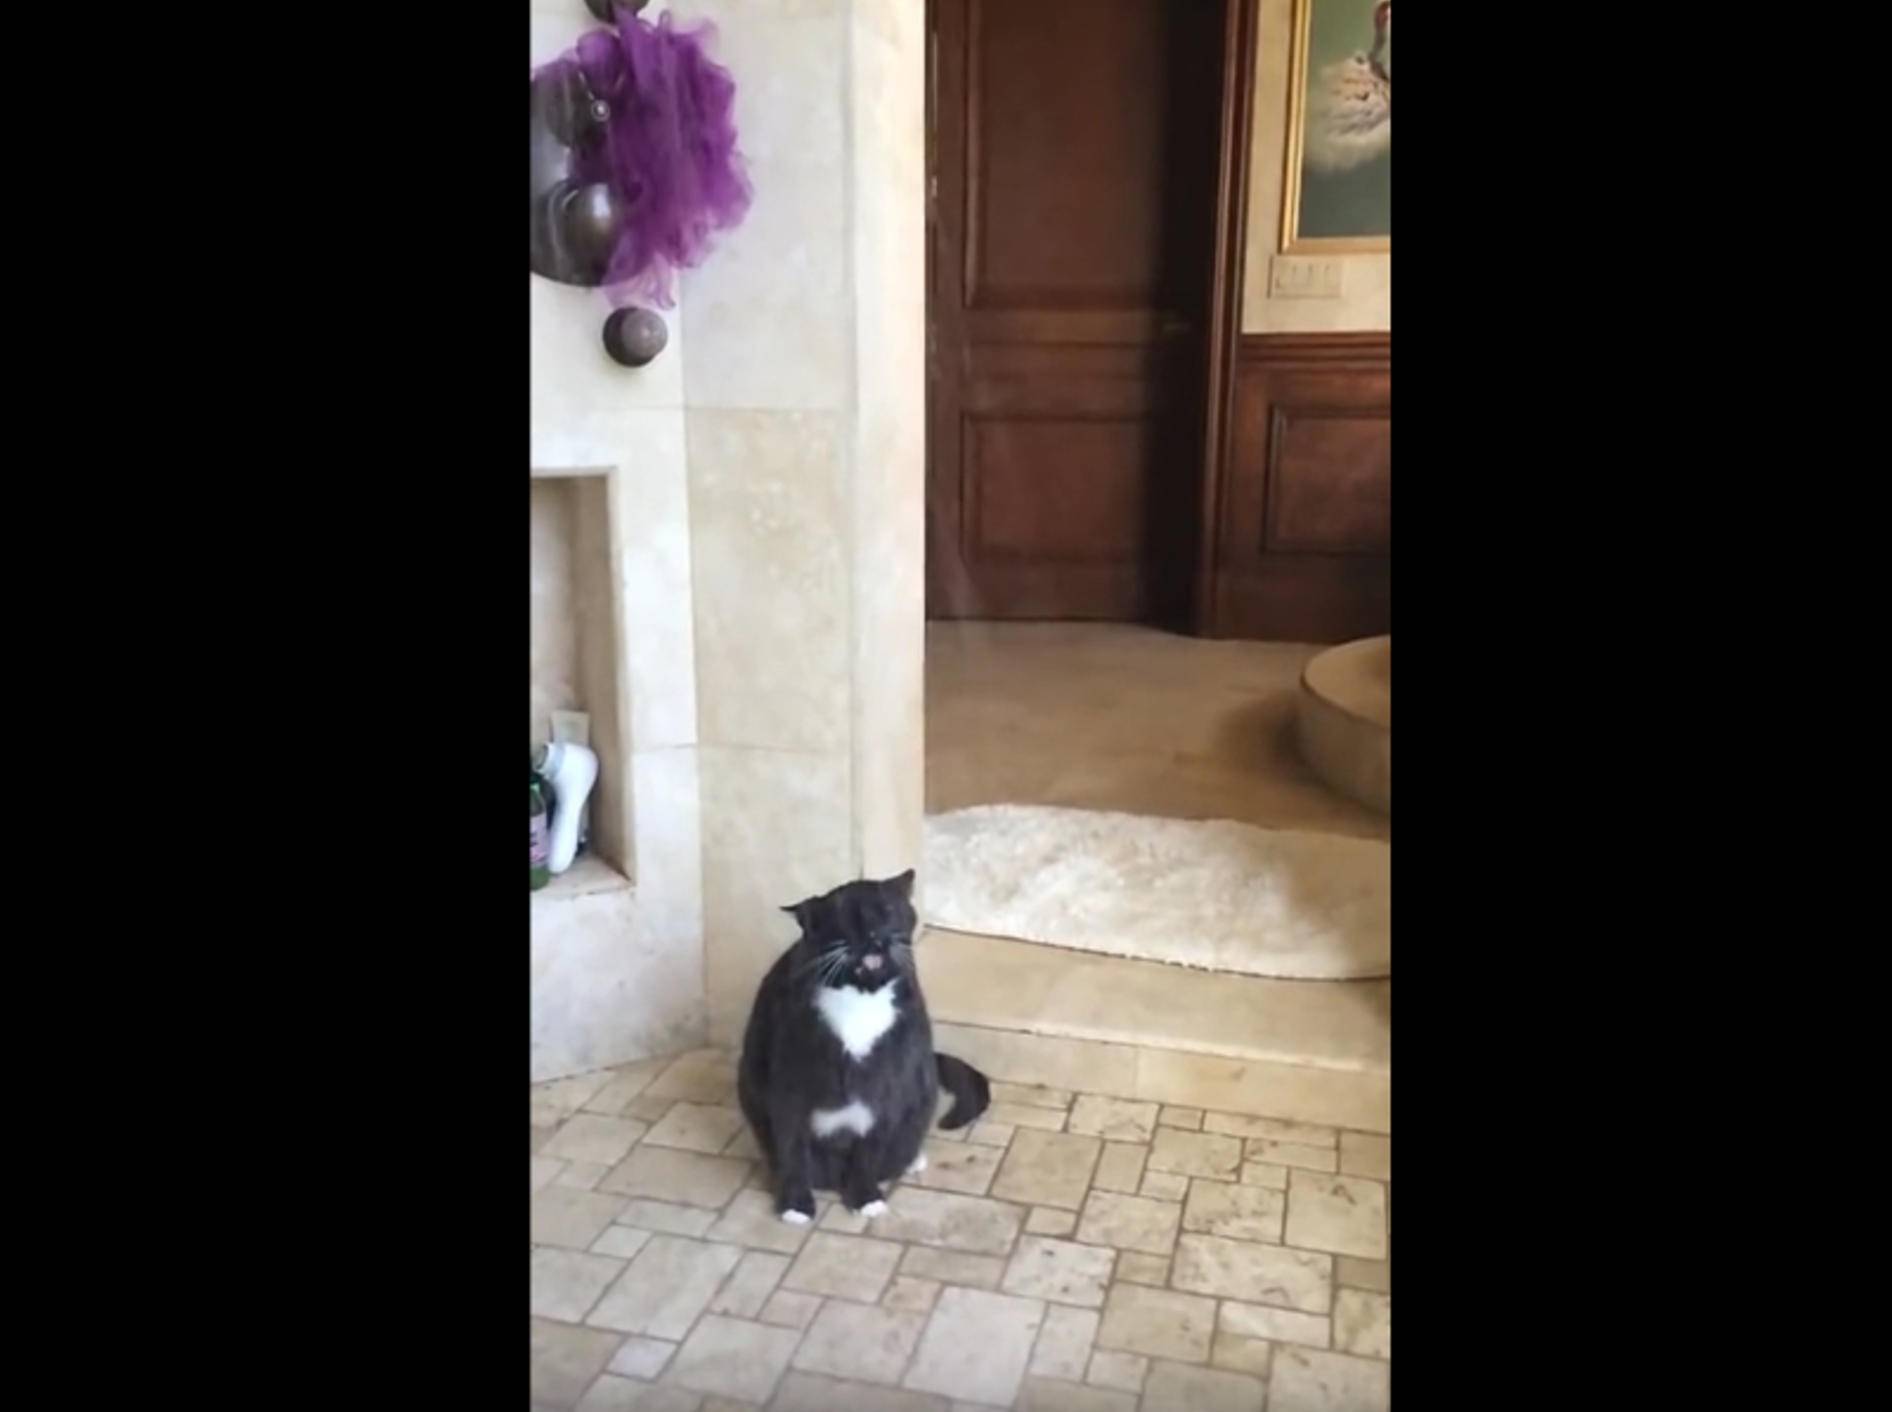 Wasserscheu? Von wegen! Katze findet Duschen klasse – Bild: YouTube / Rumble Viral